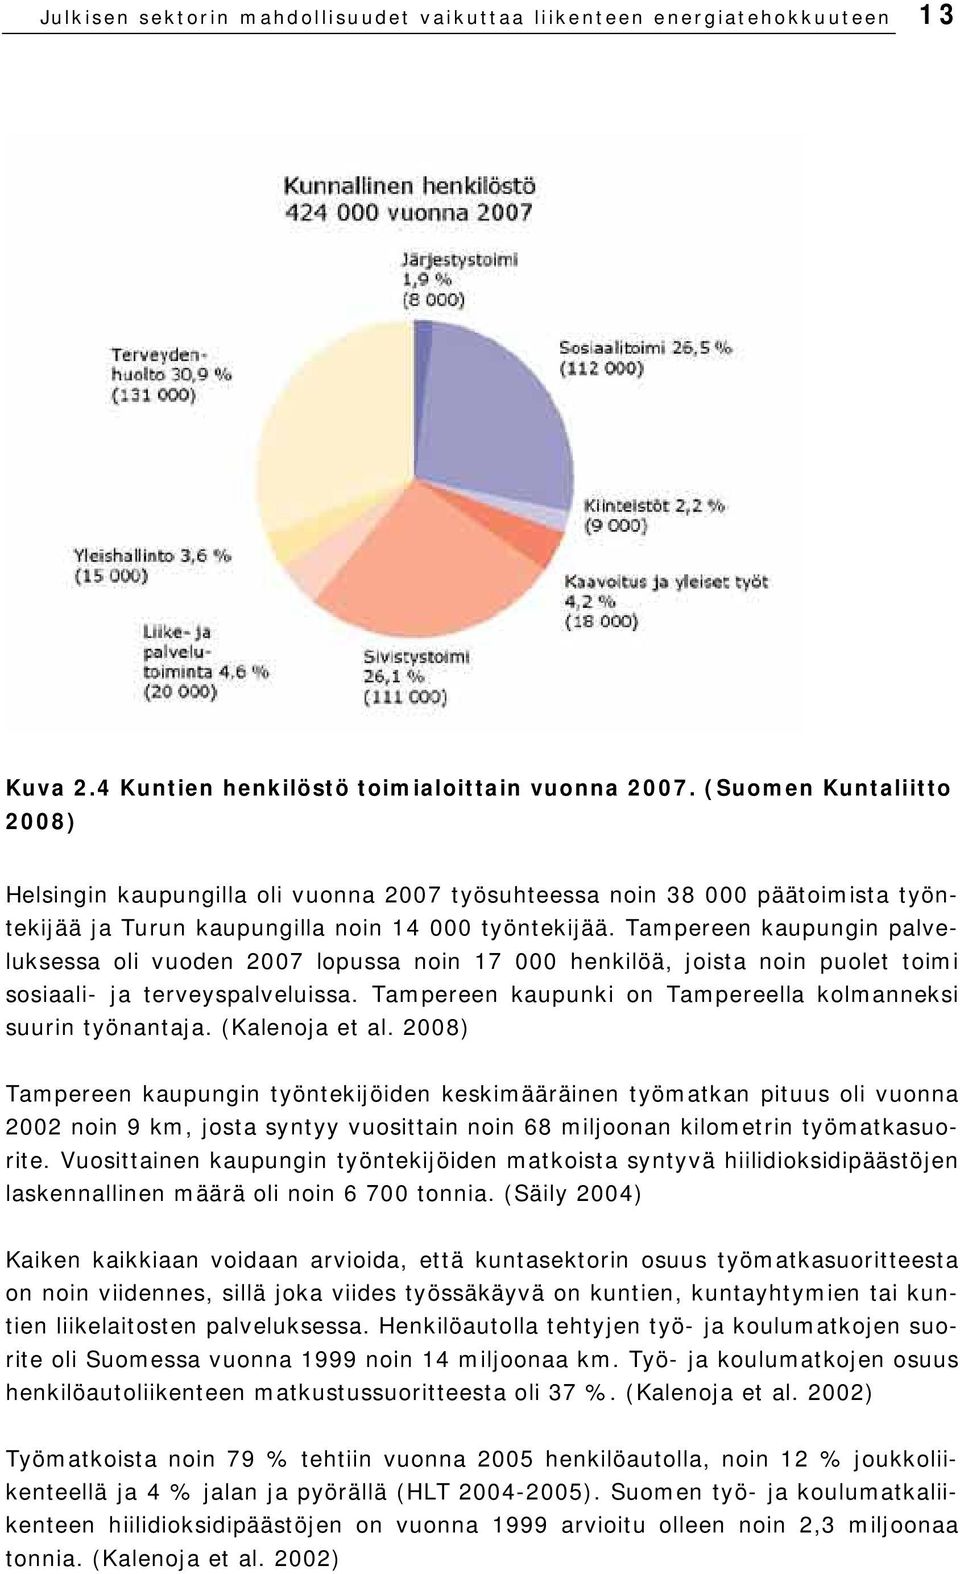 Tampereen kaupungin palveluksessa oli vuoden 2007 lopussa noin 17 000 henkilöä, joista noin puolet toimi sosiaali- ja terveyspalveluissa.